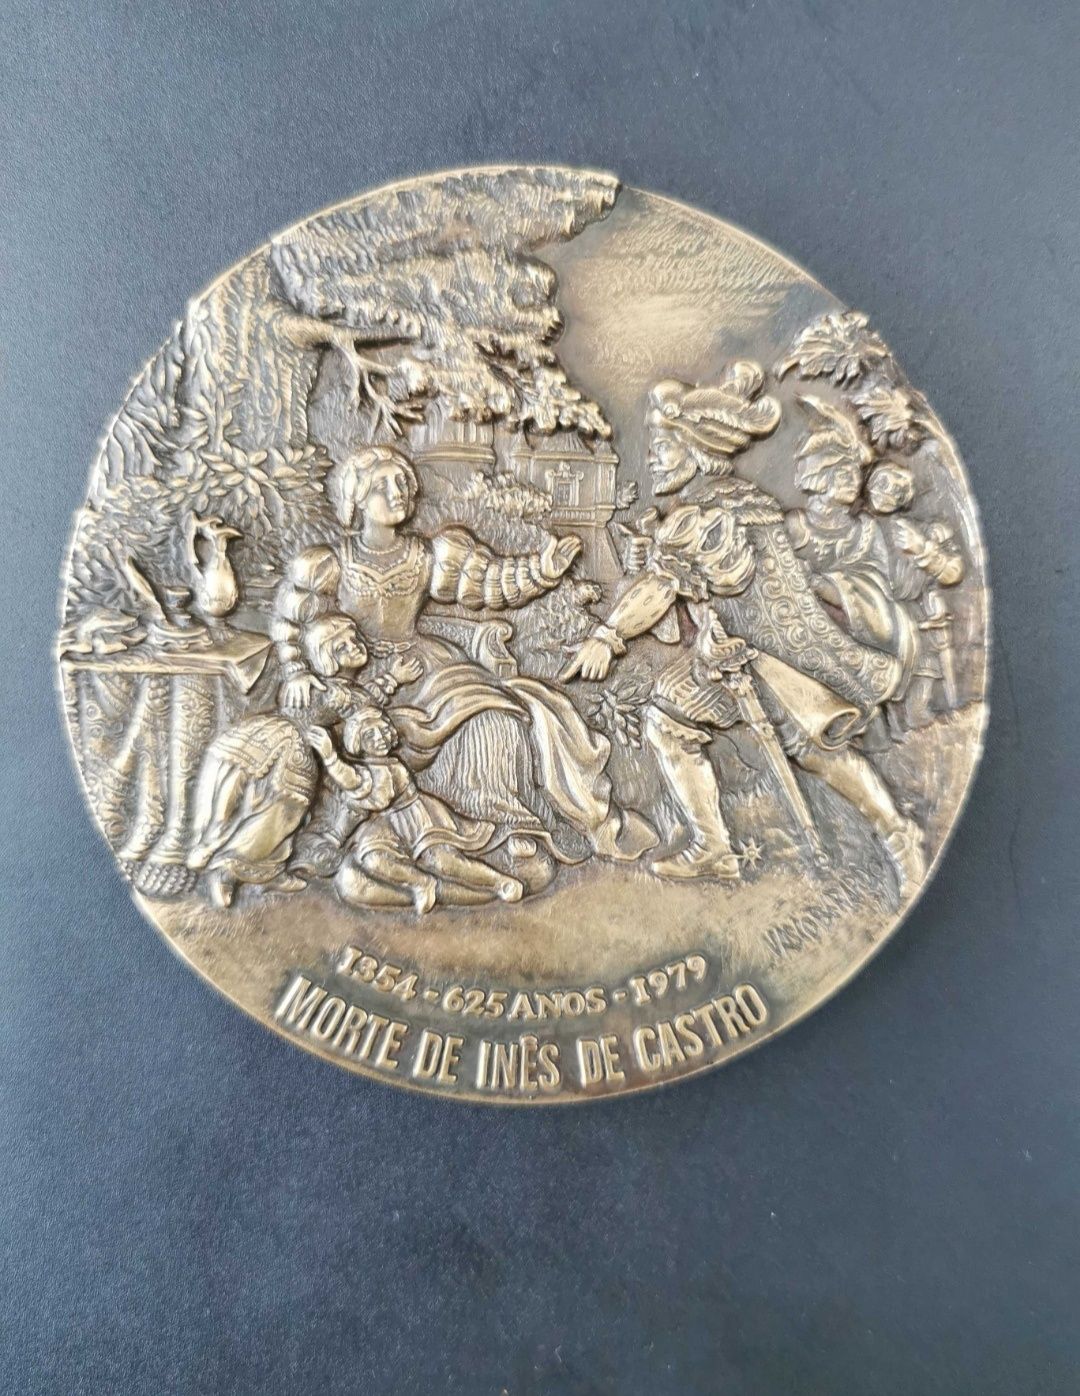 Medalha de Bronze da Morte de Inês de Castro - Edição Limitada 76/700